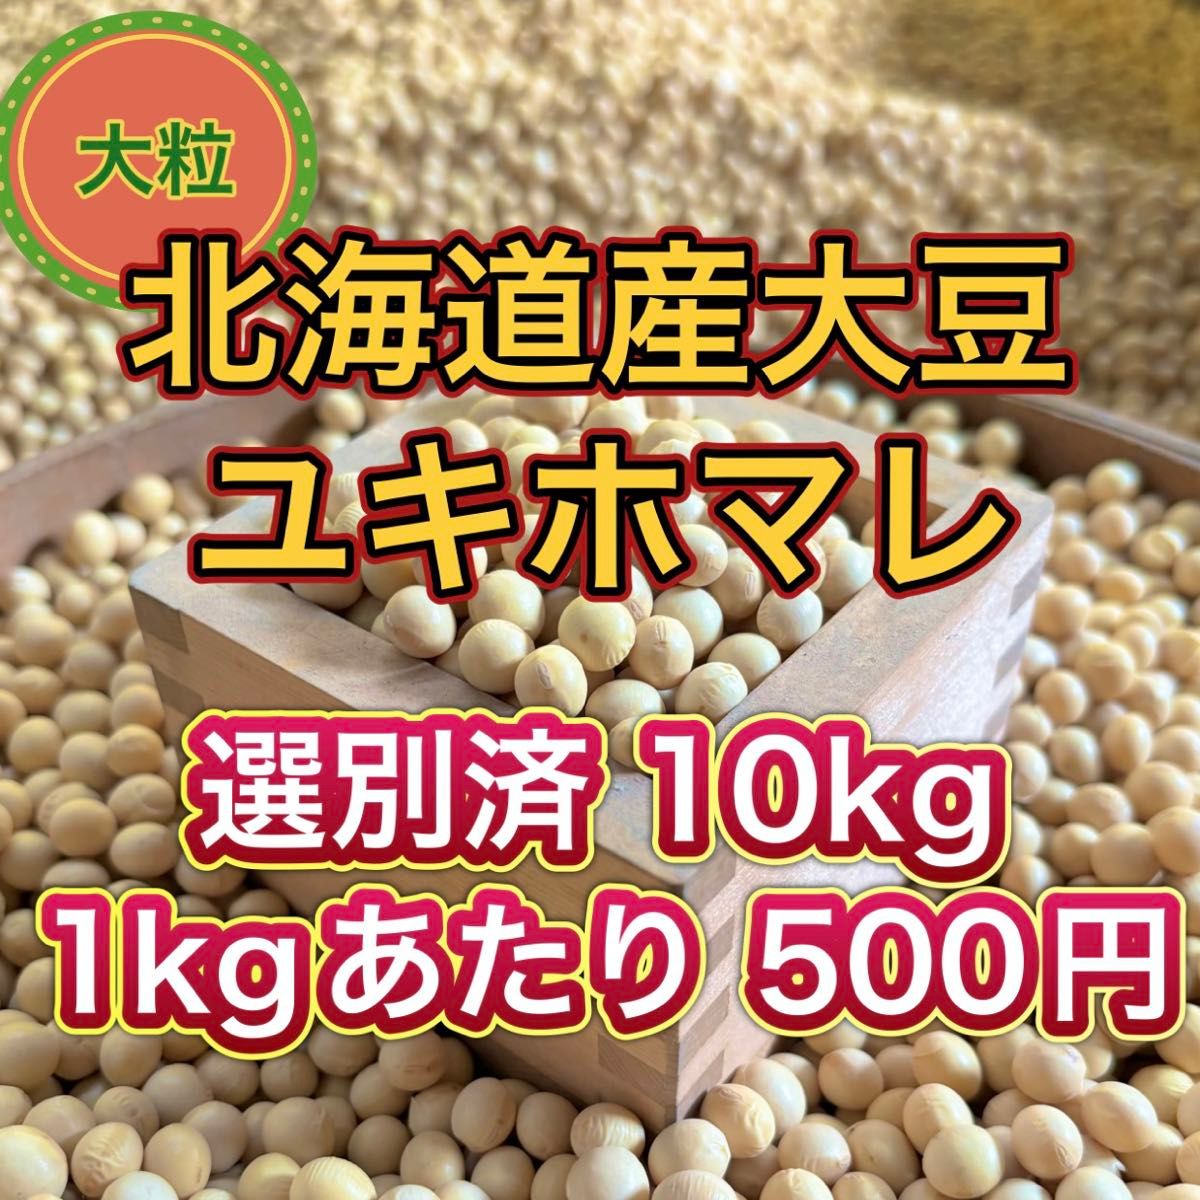 大人気 北海道産 大豆 10kg 匿名配送 自家製 味噌 納豆 豆腐 豆乳